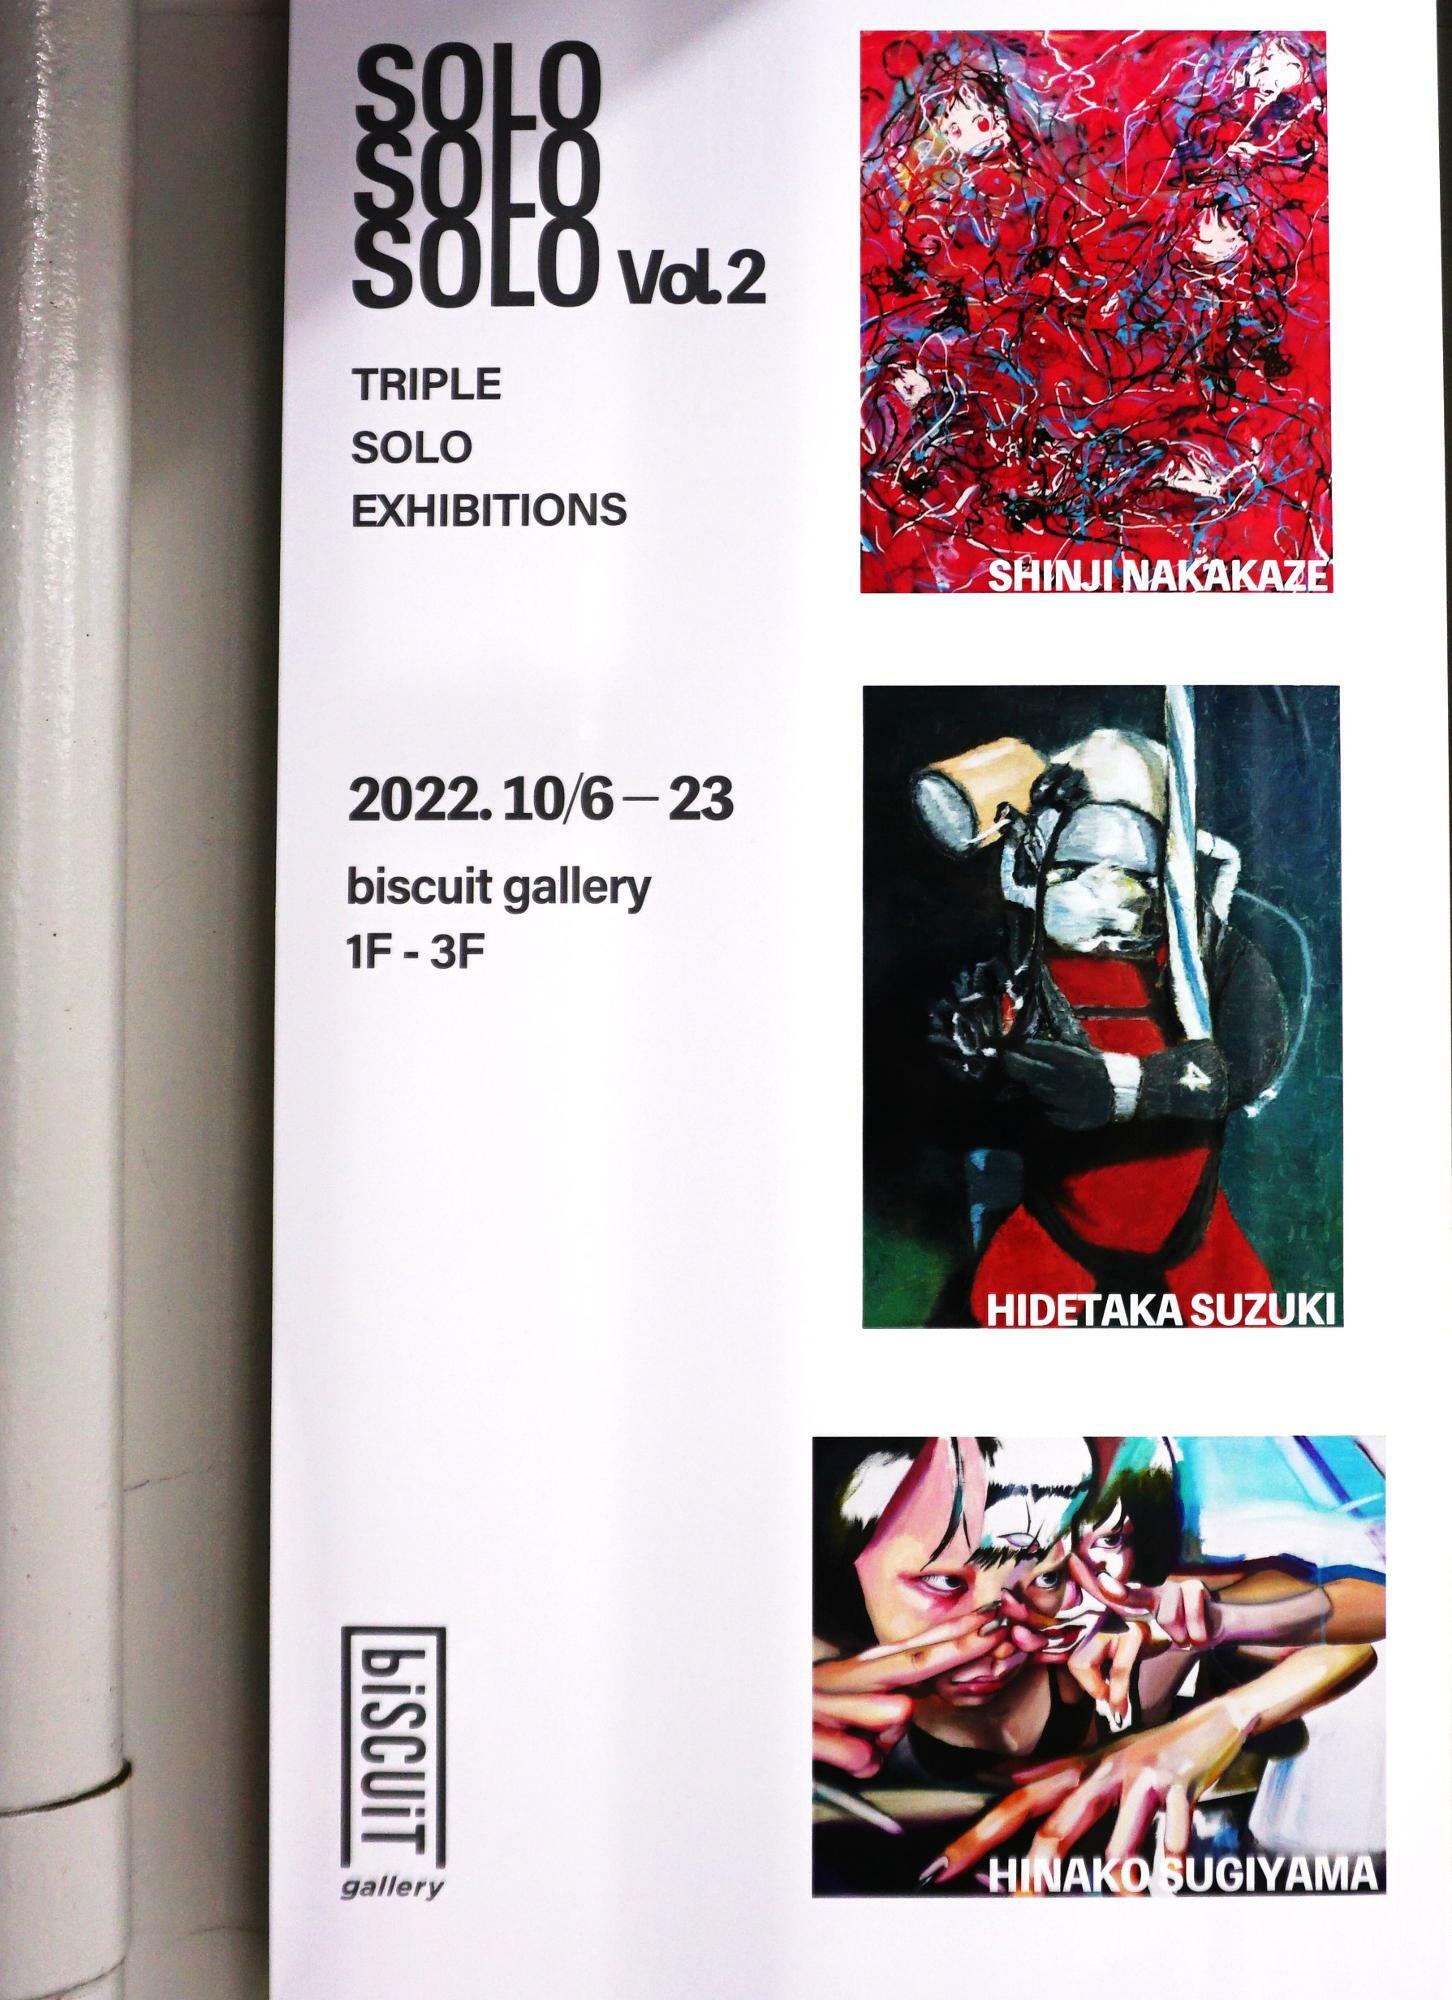 SOLO SOLO SOLO vol.2に参加しているのは、美術作家・杉山日向子さん、鈴木秀尚さん、中風森滋さんの3名。